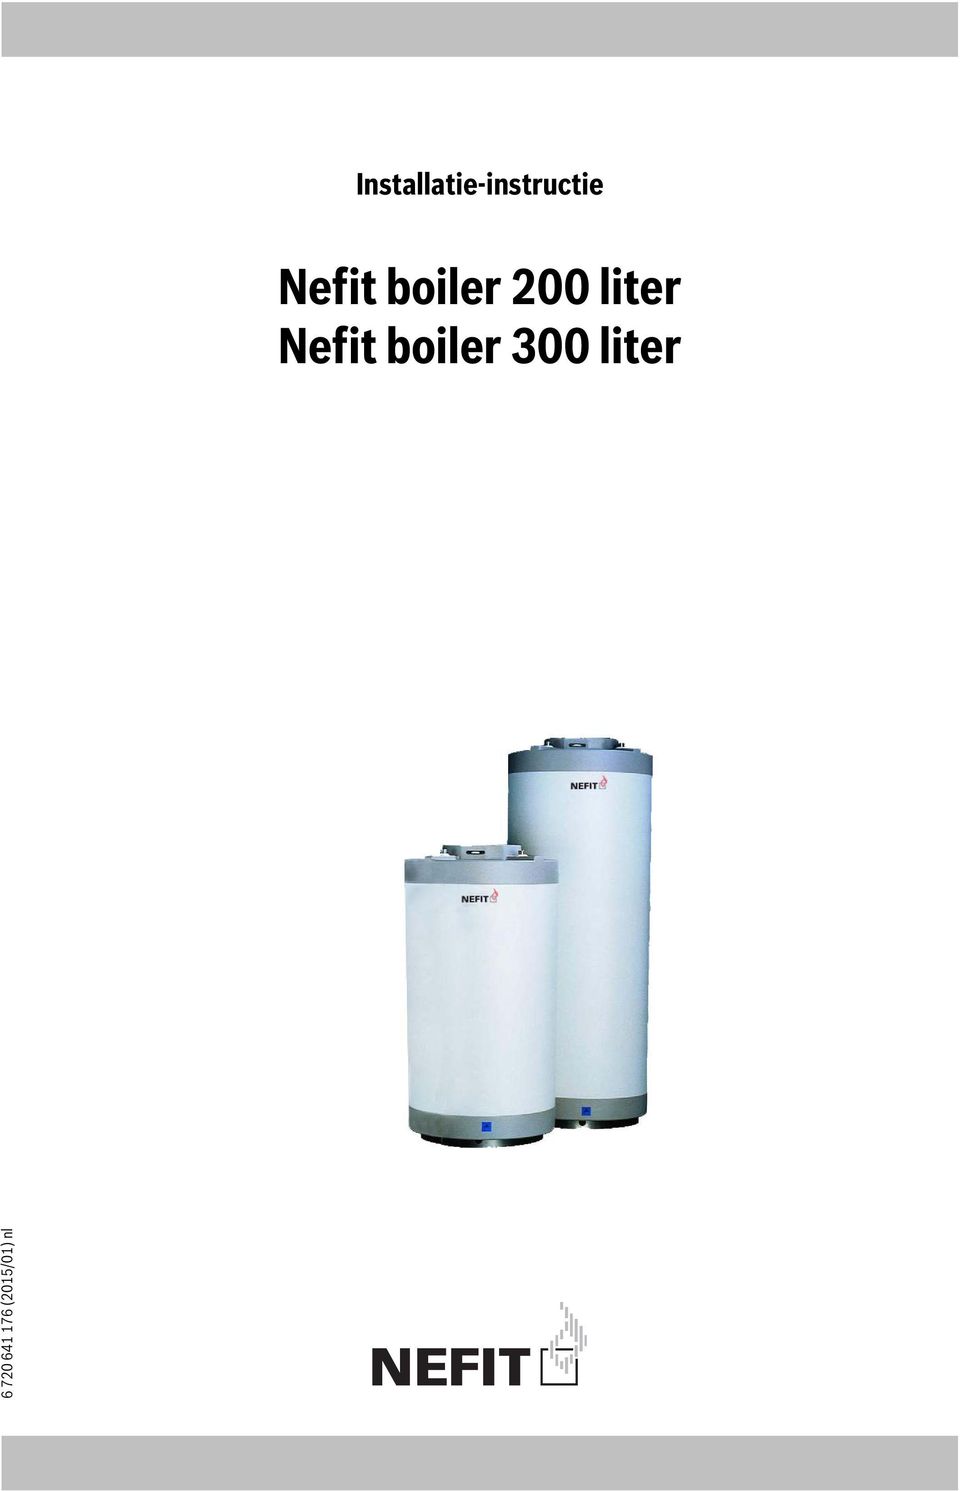 Nefit boiler 300 liter